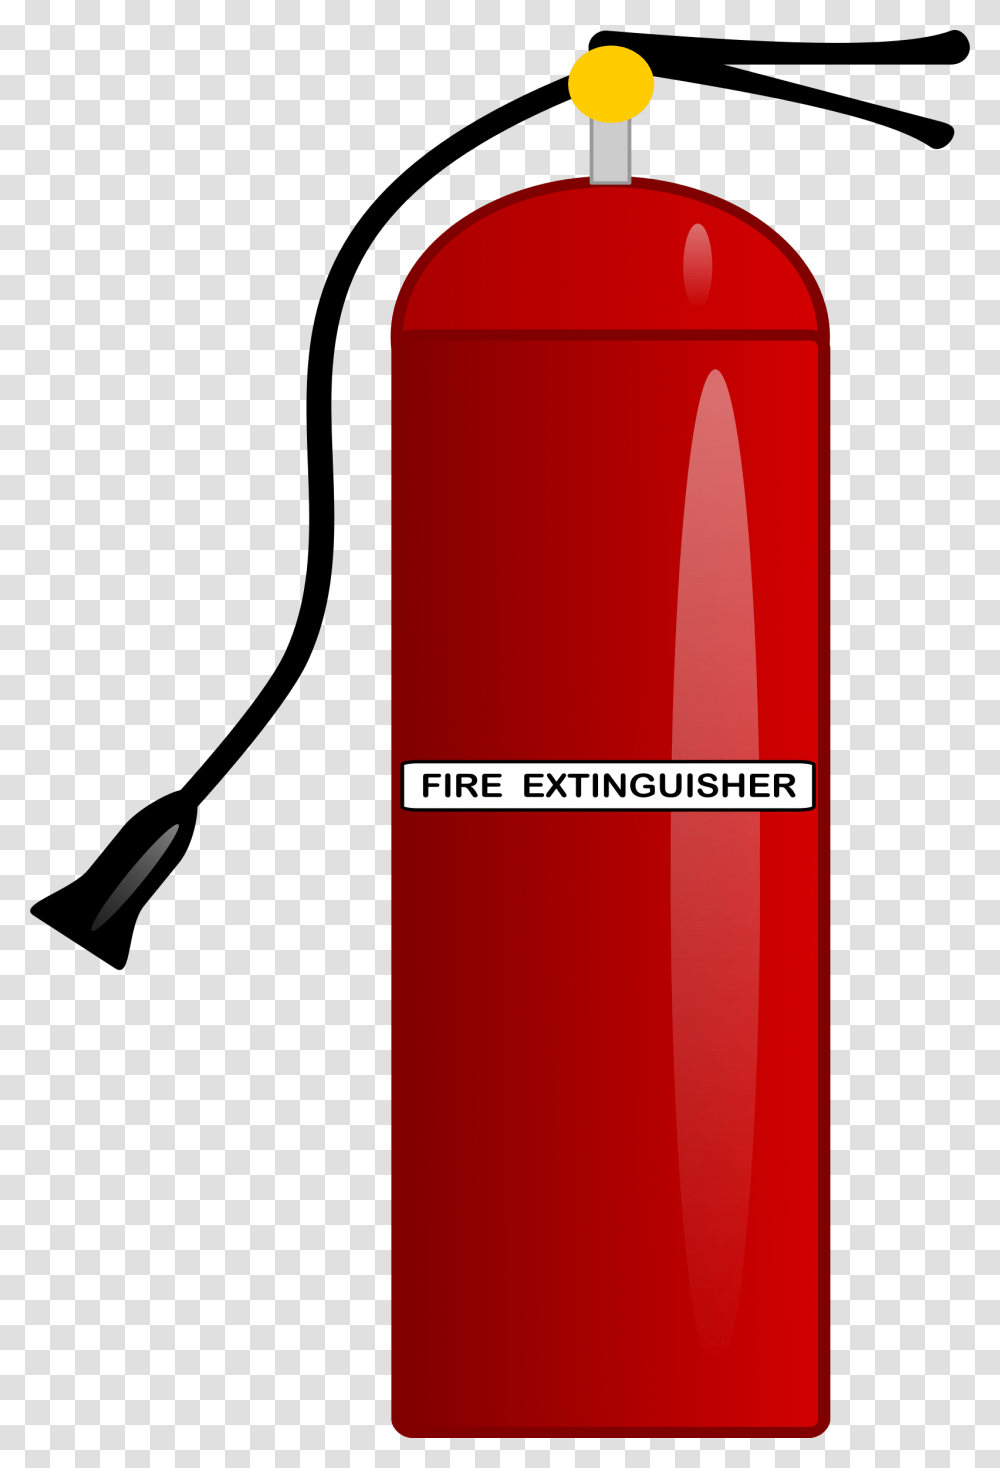 Extinguisher Images Free Download, Bottle, Beverage, Alcohol, Gas Pump Transparent Png